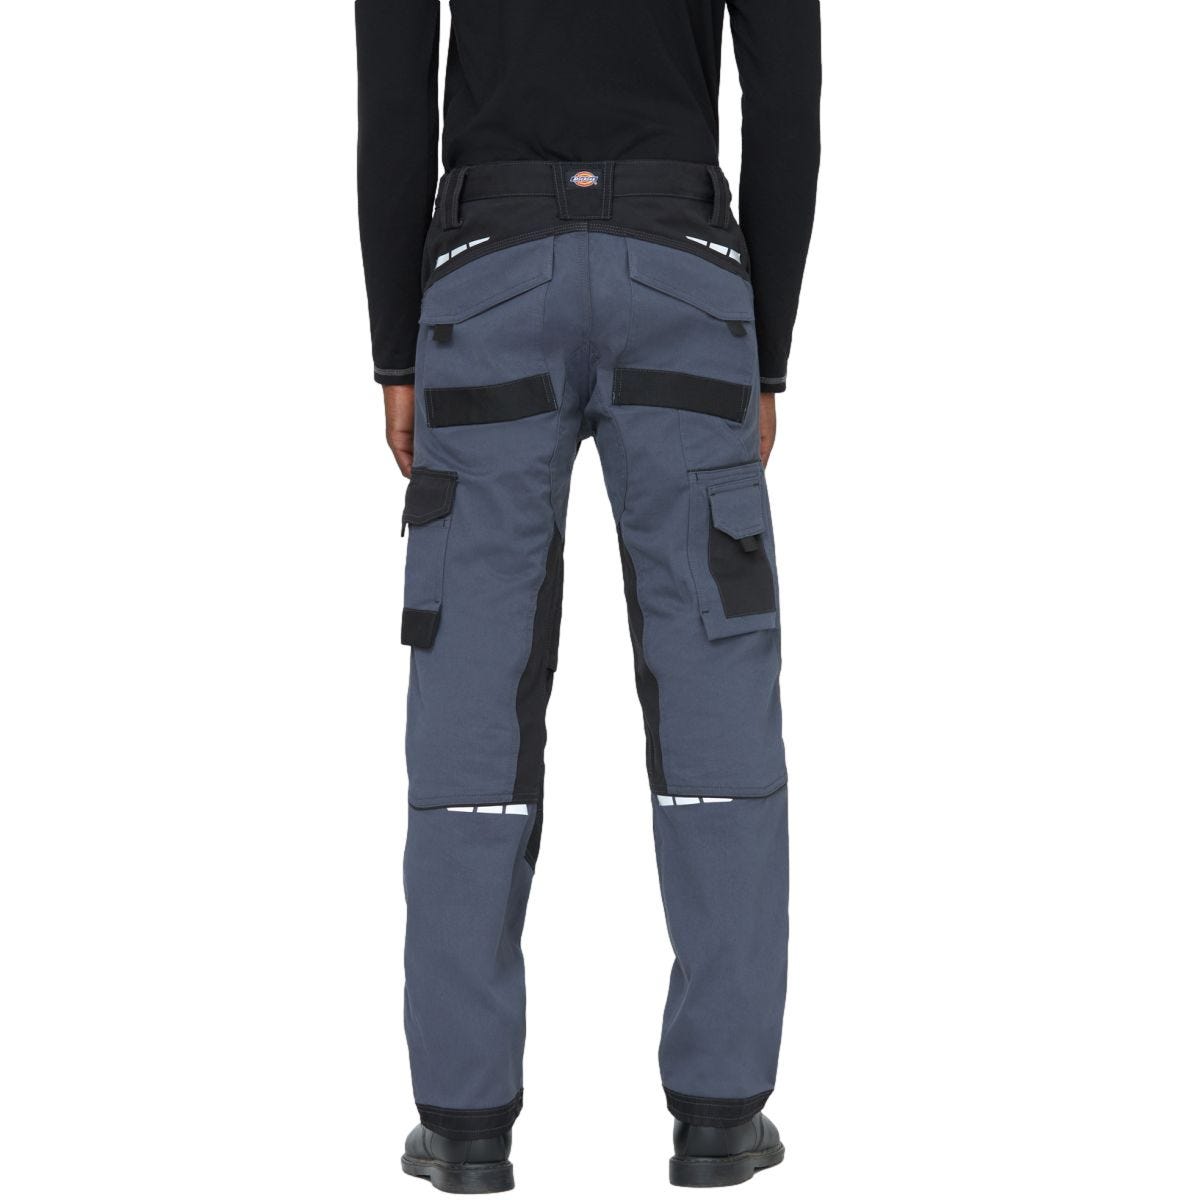 Pantalon de travail GDT Premium gris/noir - Dickies - Taille 44 3